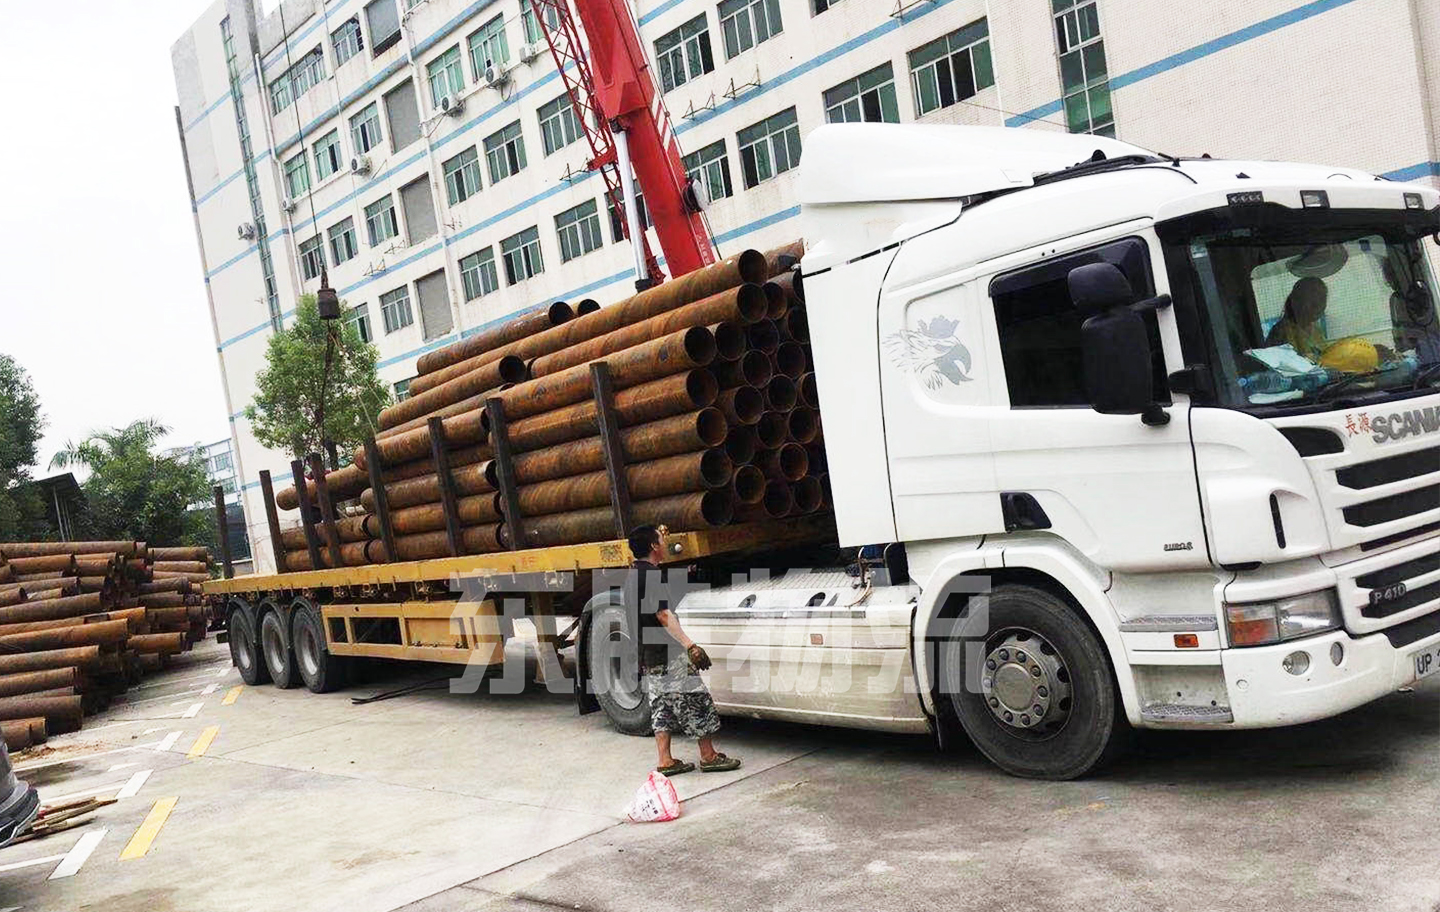 钢结构、钢材物流到香港,大件钢材钢管运输至香港,发钢材到香港怎么操作?钢板发香港运输案例